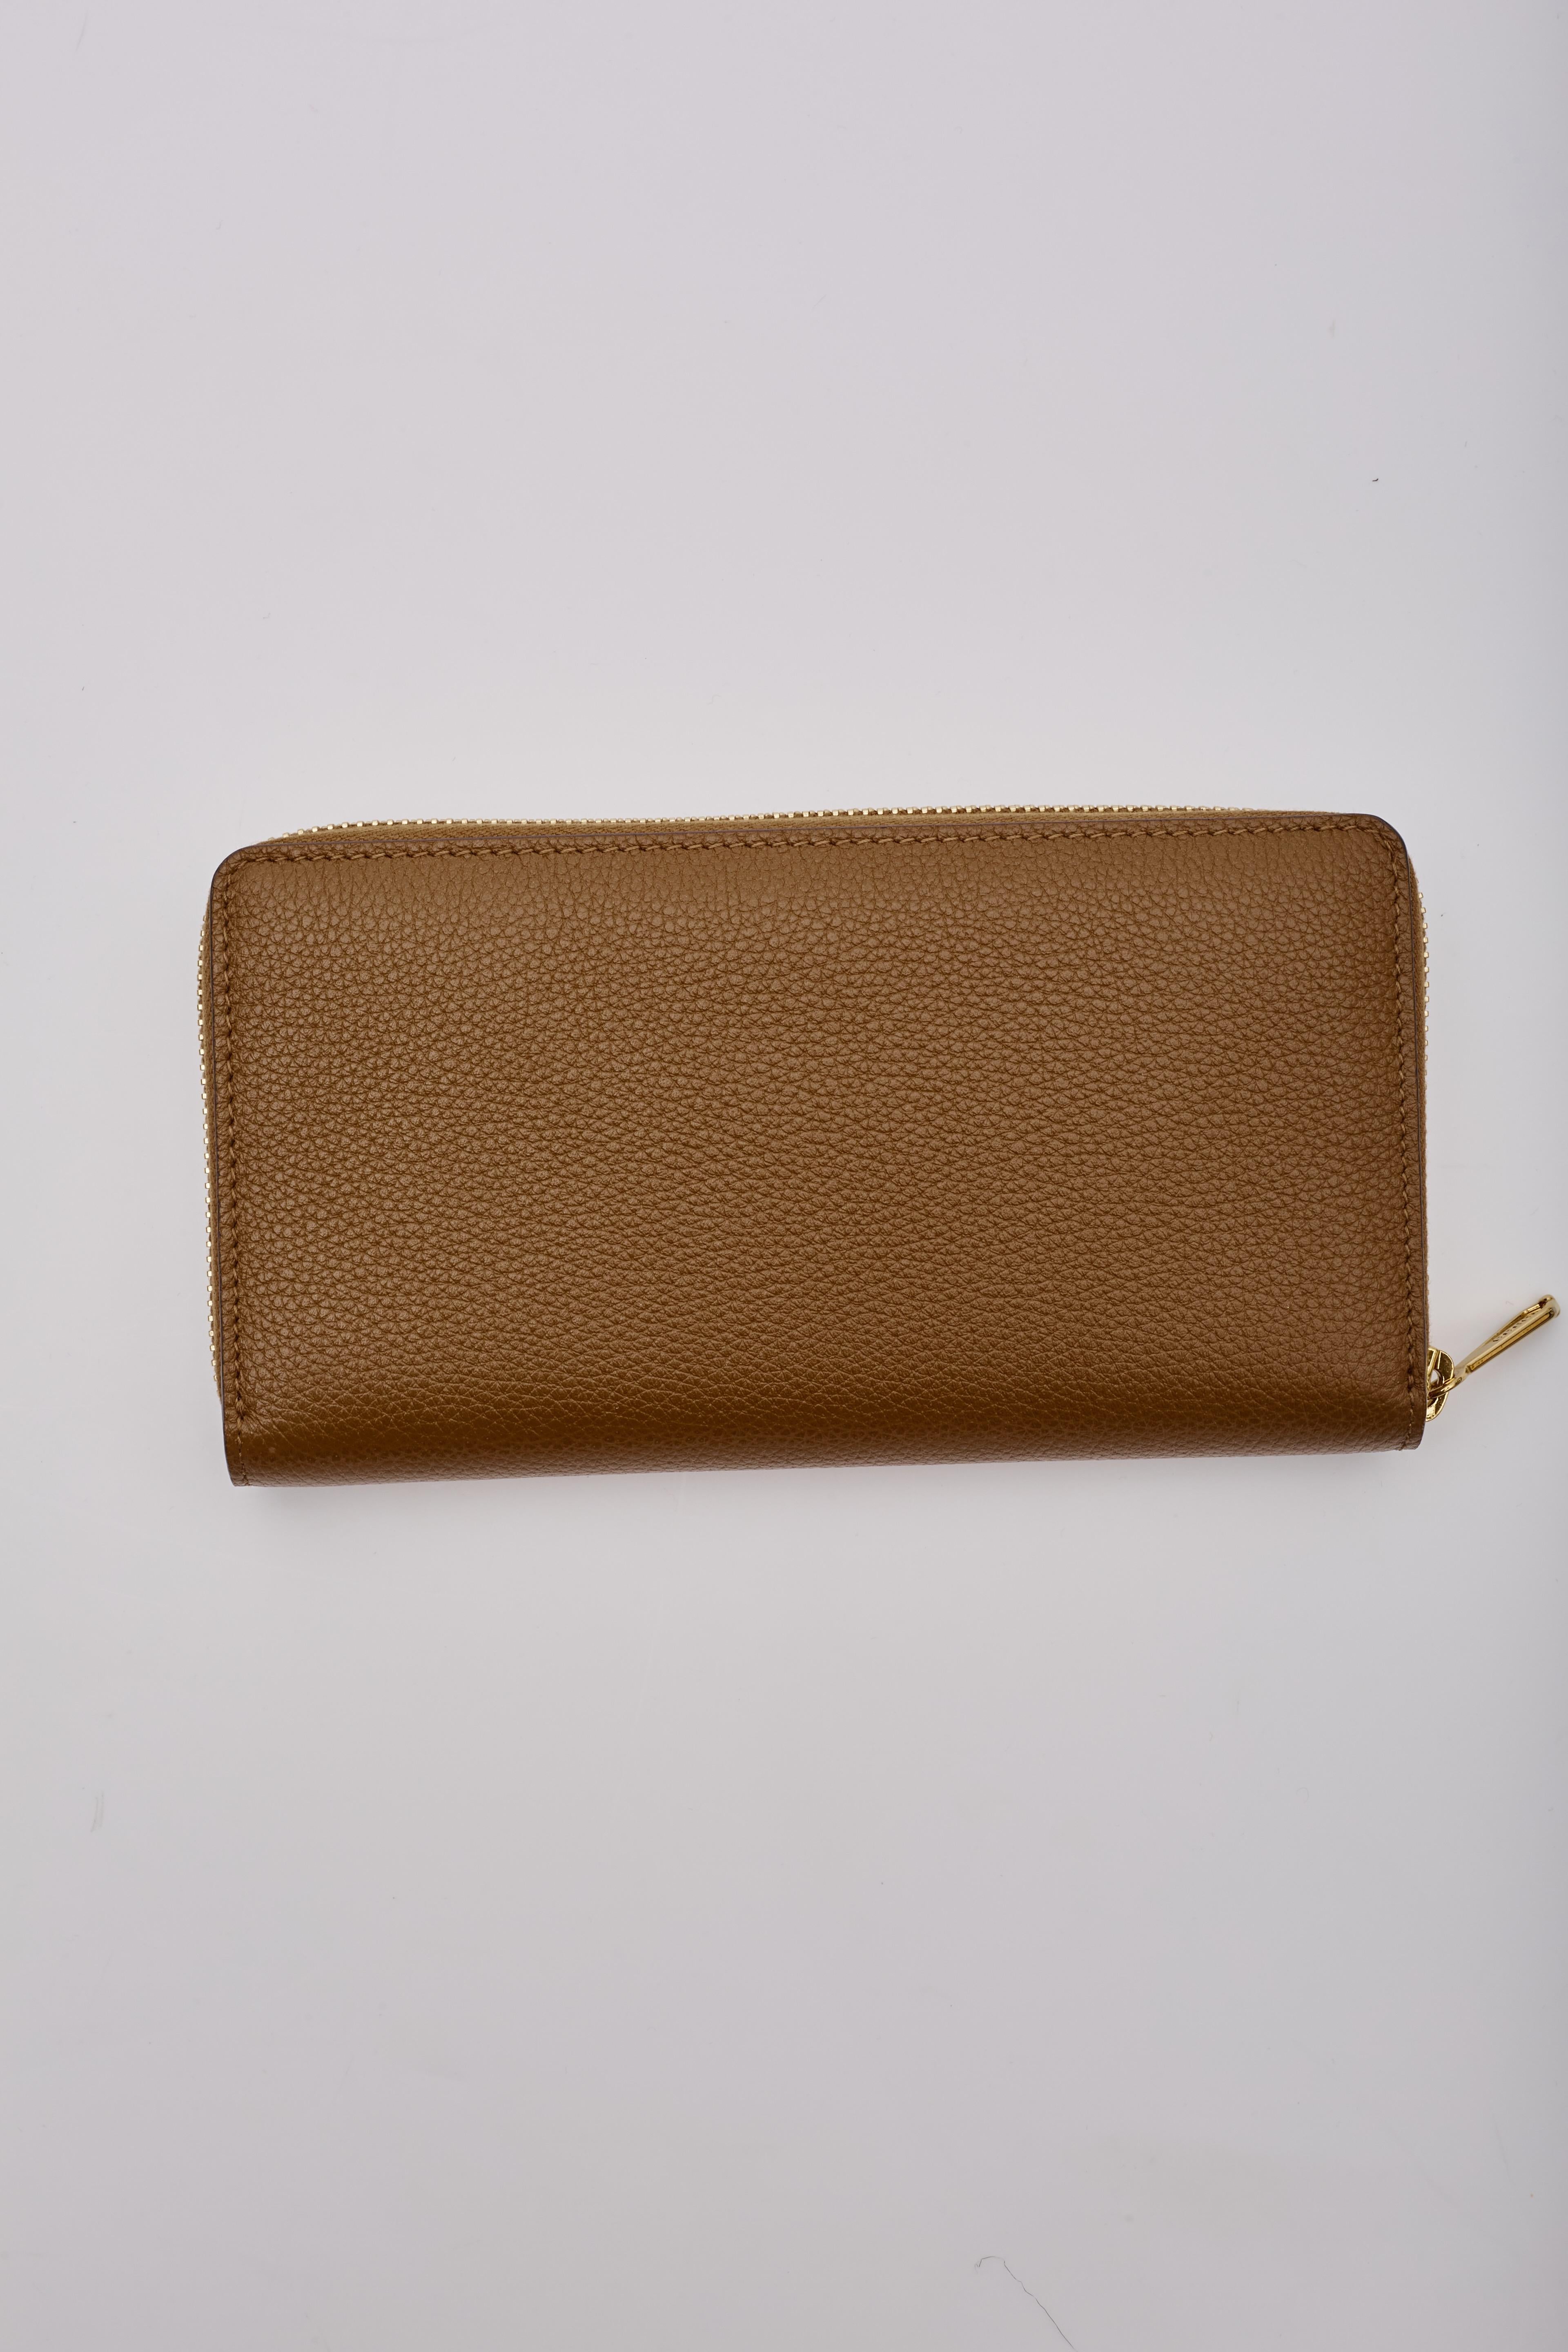 Gucci Zumi Brieftasche aus Leder mit Reißverschluss. Sie ist aus Leder gefertigt, hat eine Posillipo-Narbung, helles Feingold und dunkle Silberbeschläge, ein ineinandergreifendes G-Logo mit Hufeisen-Detail und ein Innenfutter aus Leder und Stoff mit